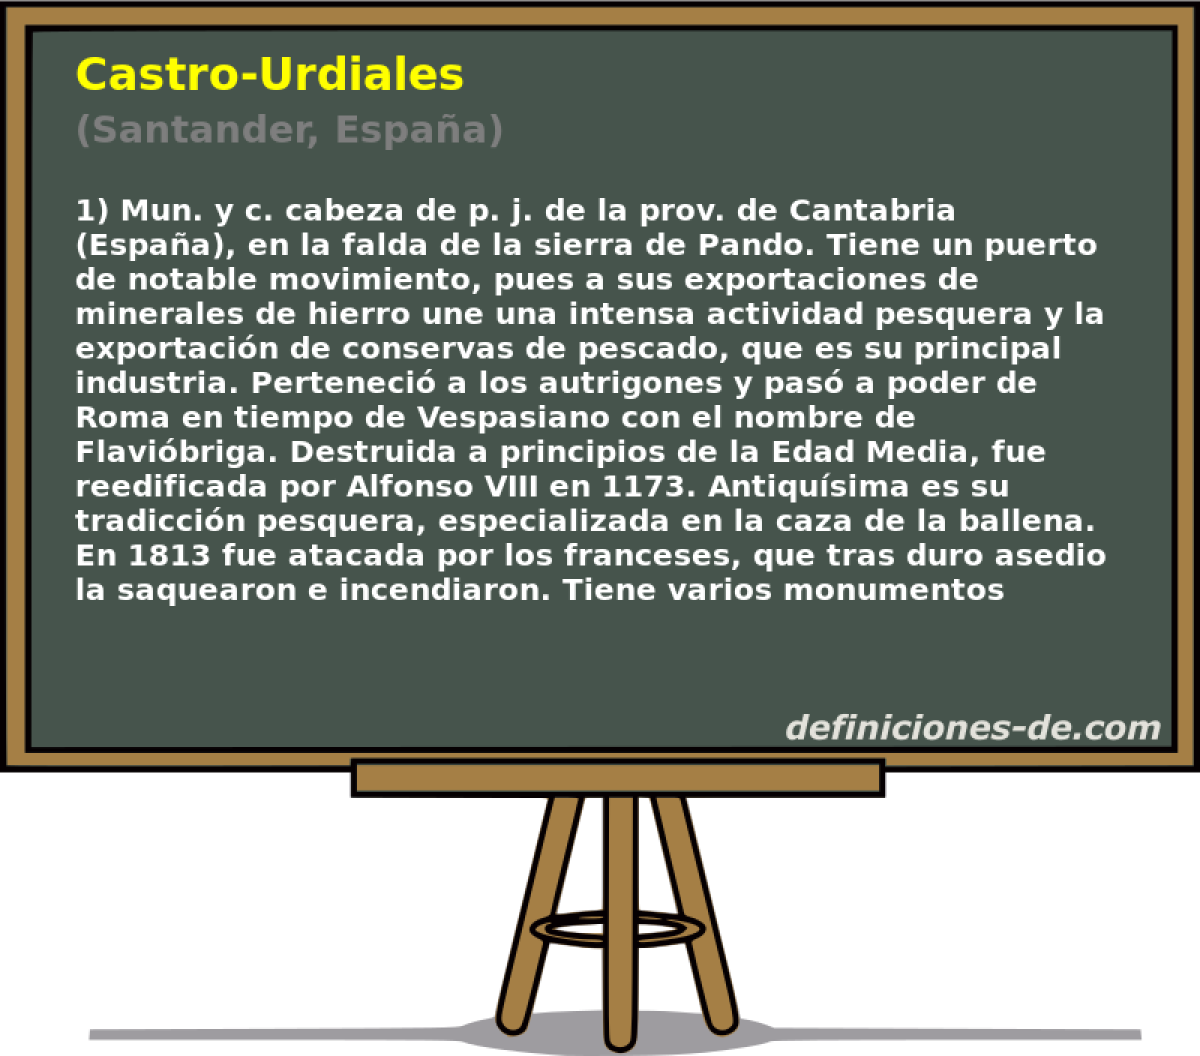 Castro-Urdiales (Santander, Espaa)